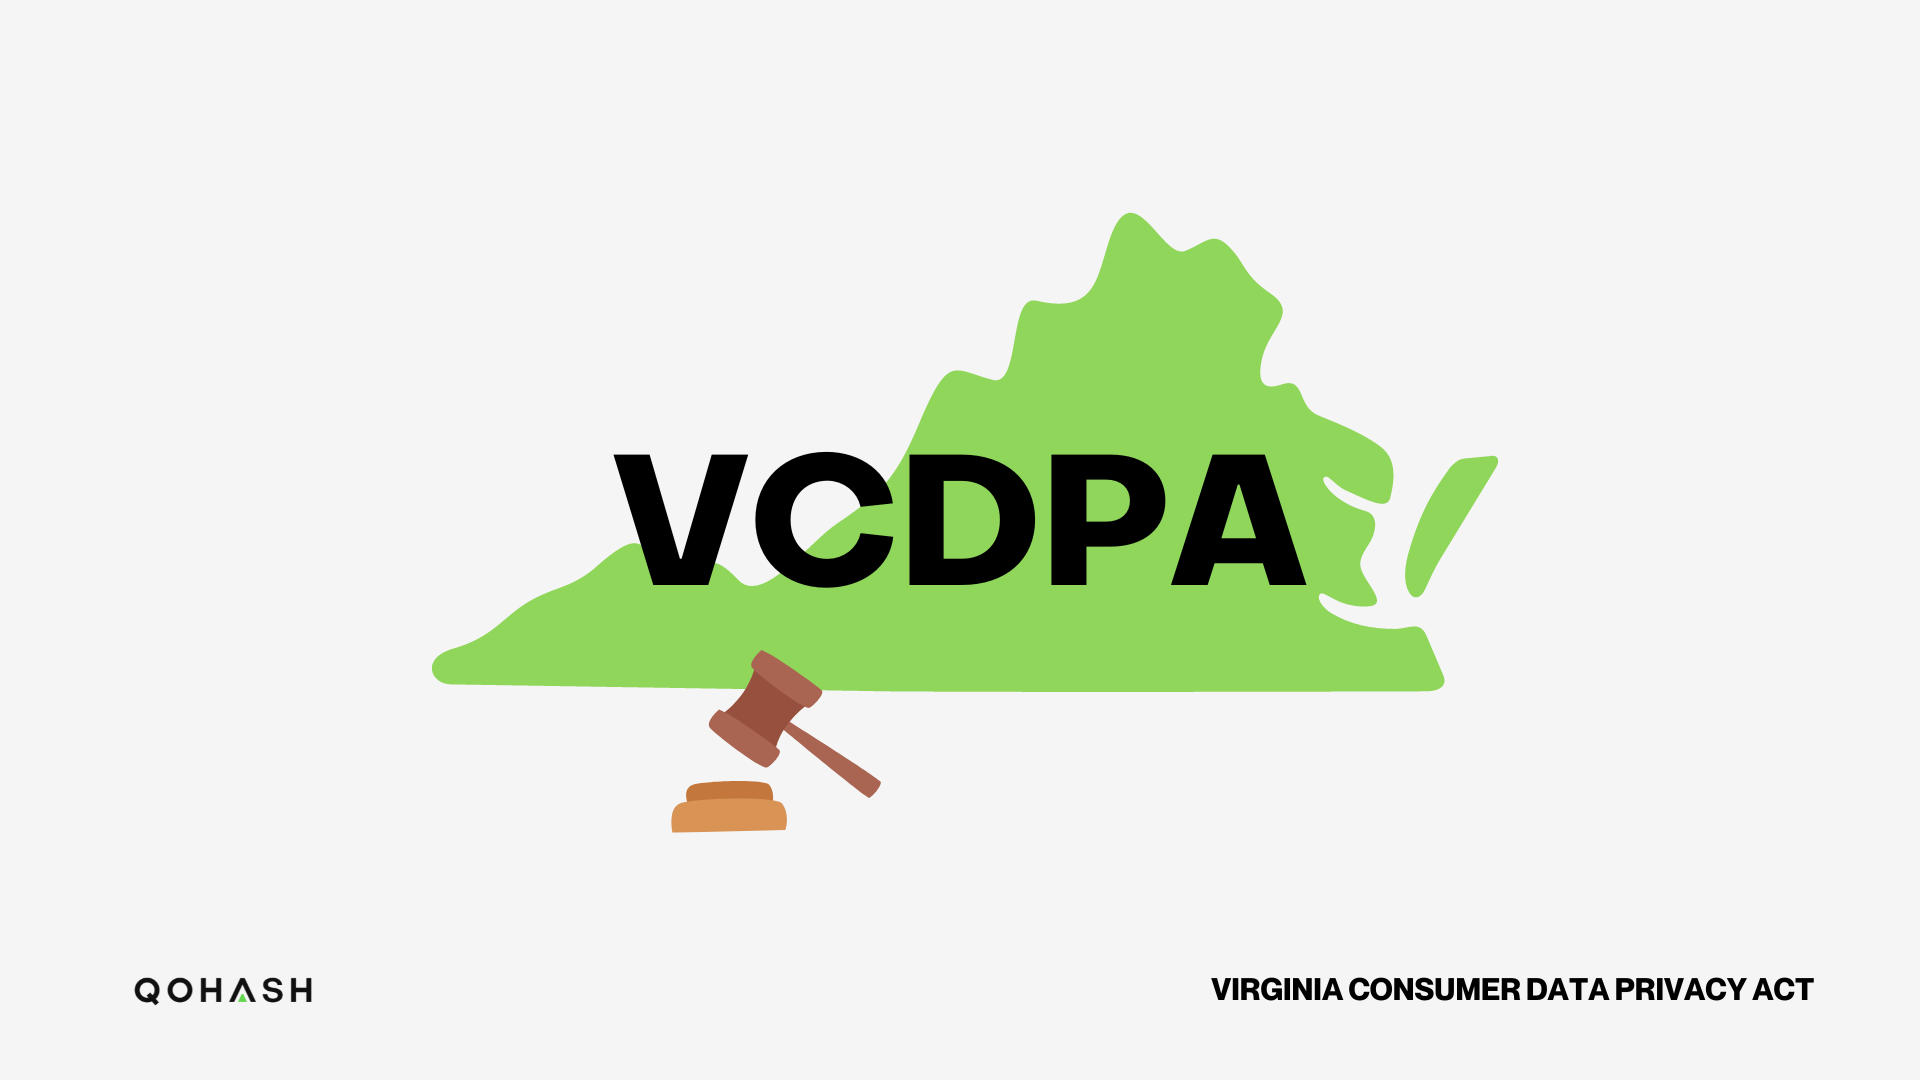 The Virginia Consumer Data Privacy Act logo